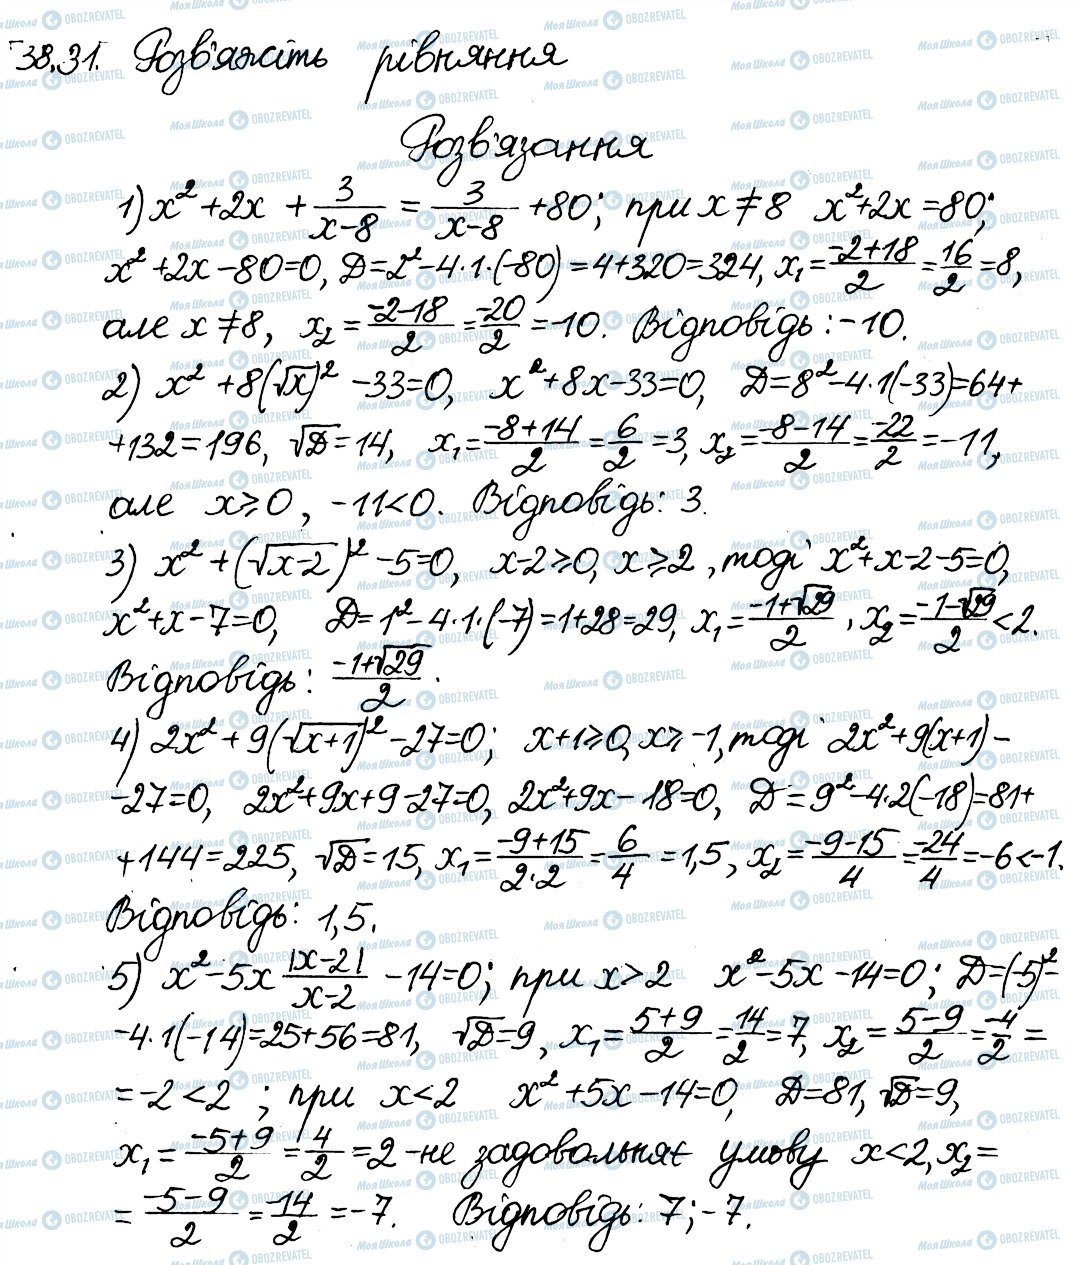 ГДЗ Алгебра 8 класс страница 31